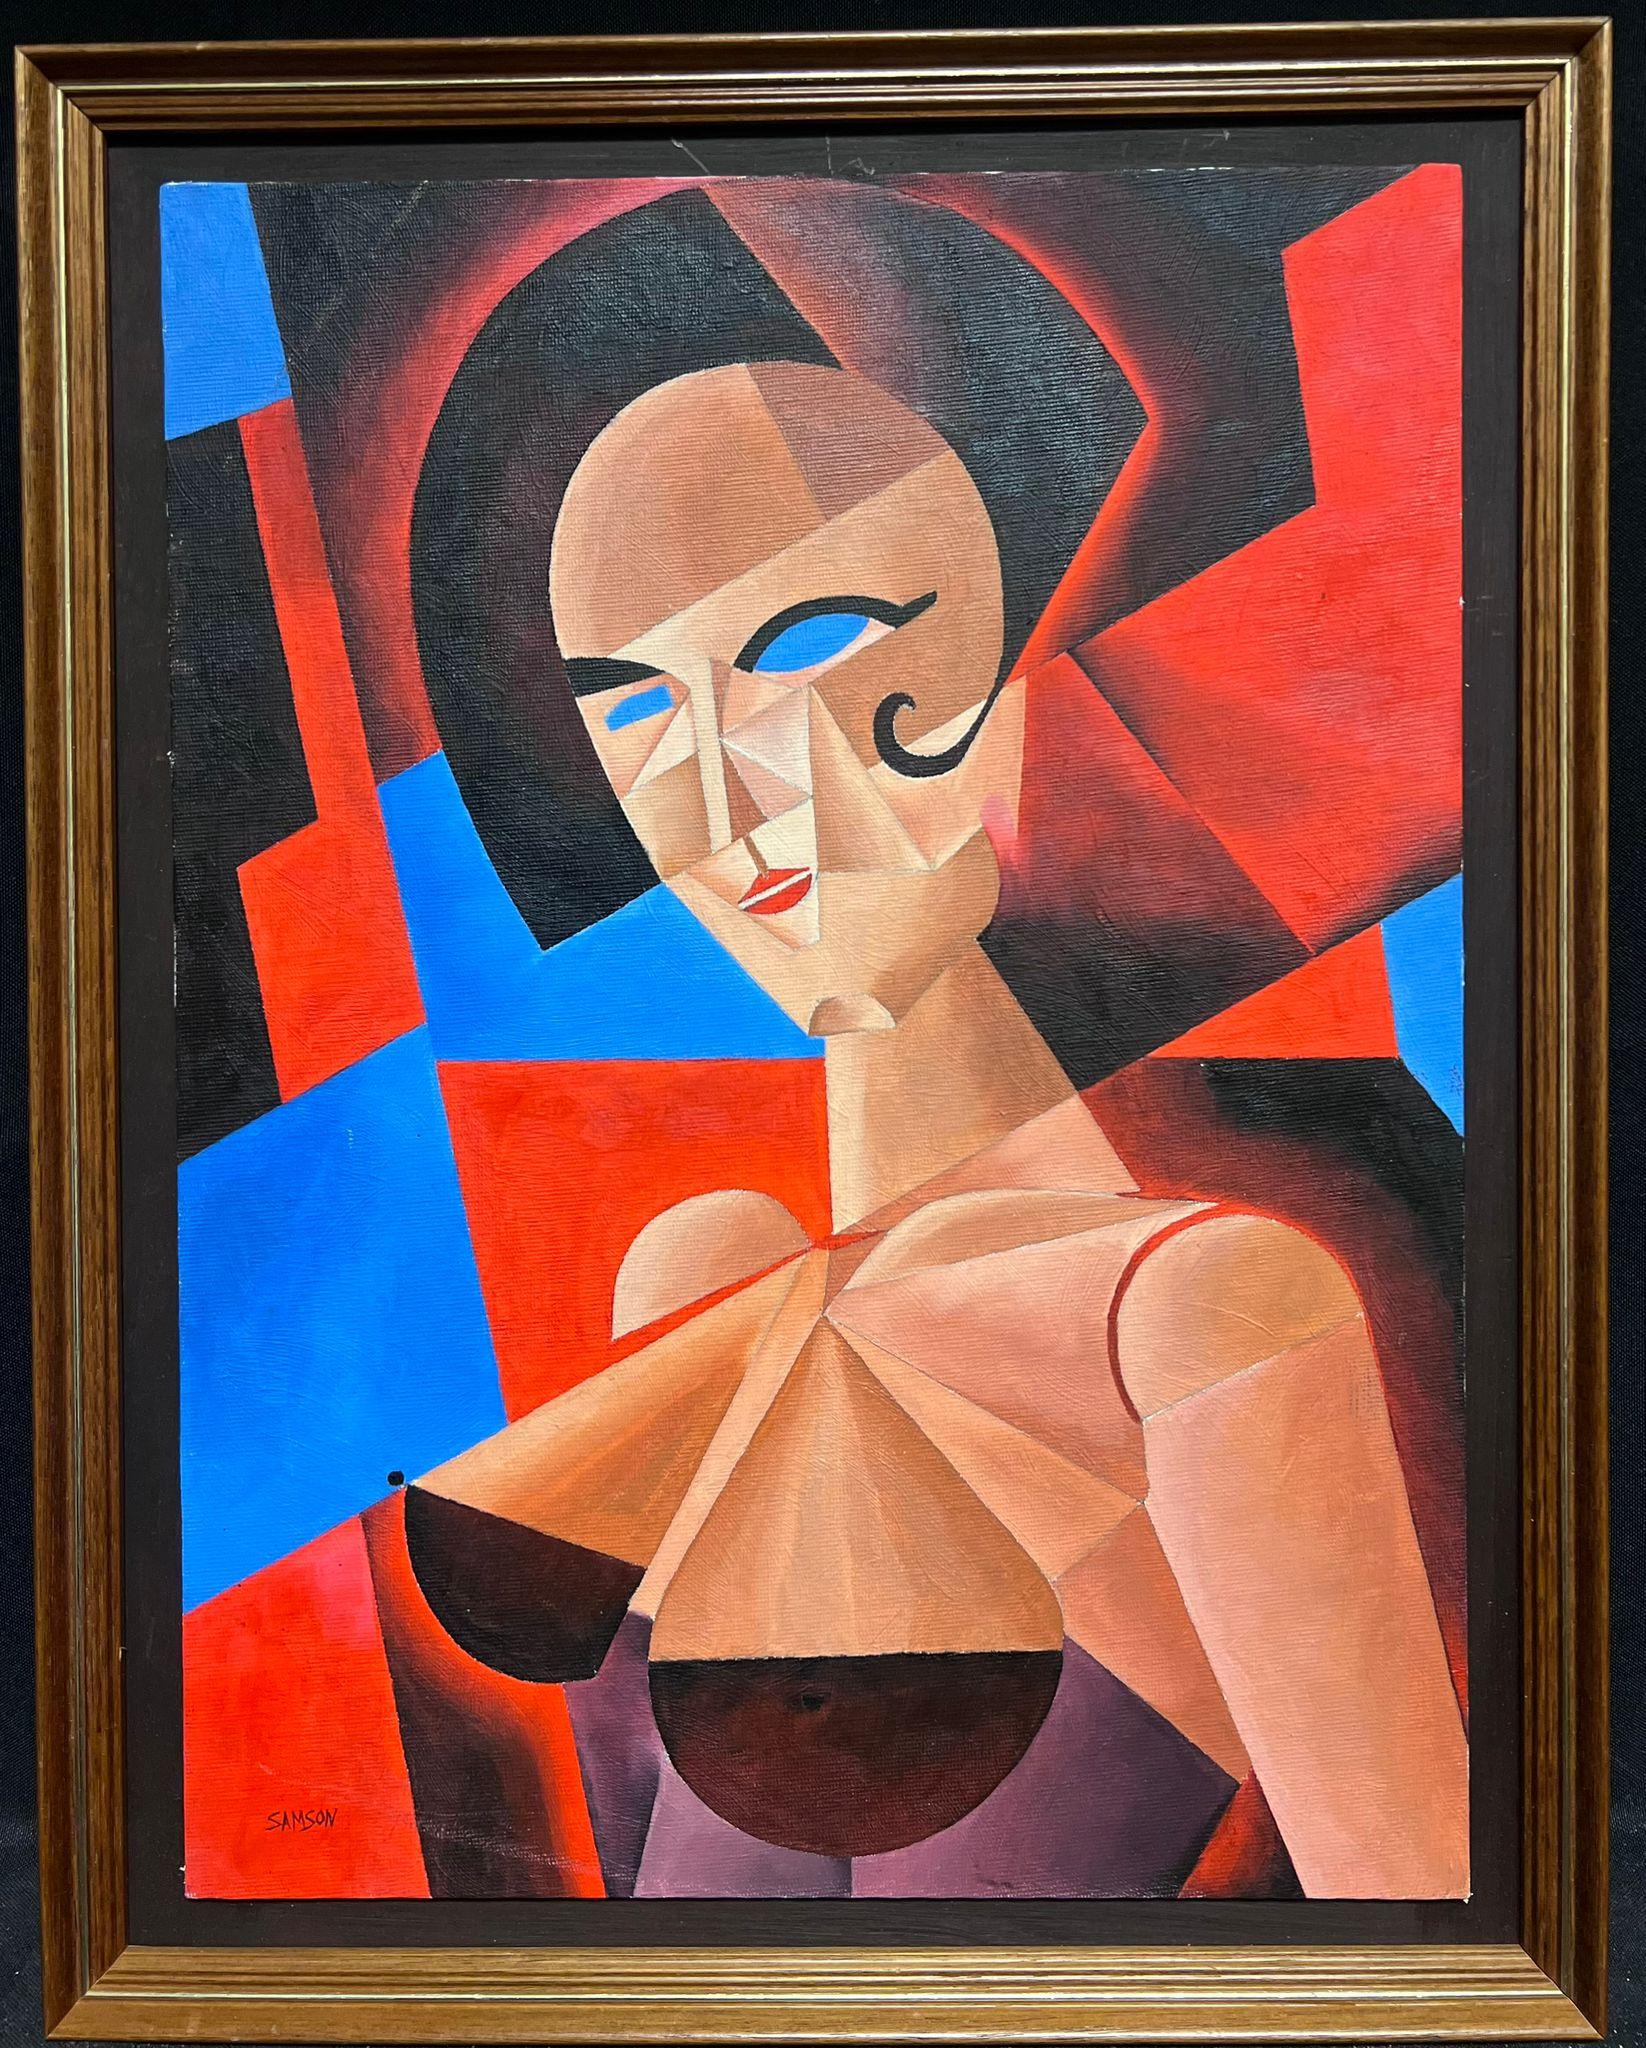 Abstraktes, kubistisches, signiertes Ölgemälde, Porträt einer Frau in eckigen Formen – Painting von British Cubist